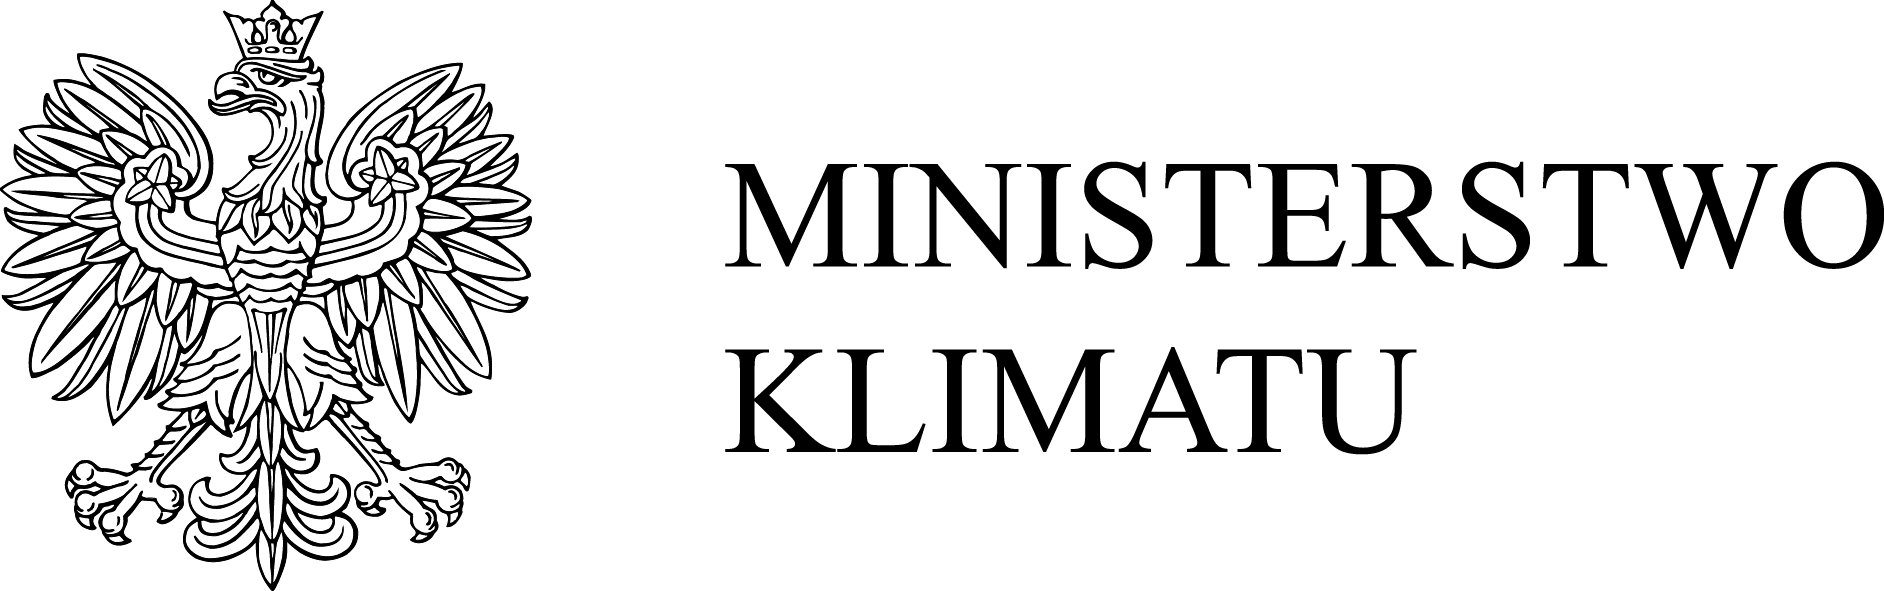 logo ministerstwo klimatu poziom